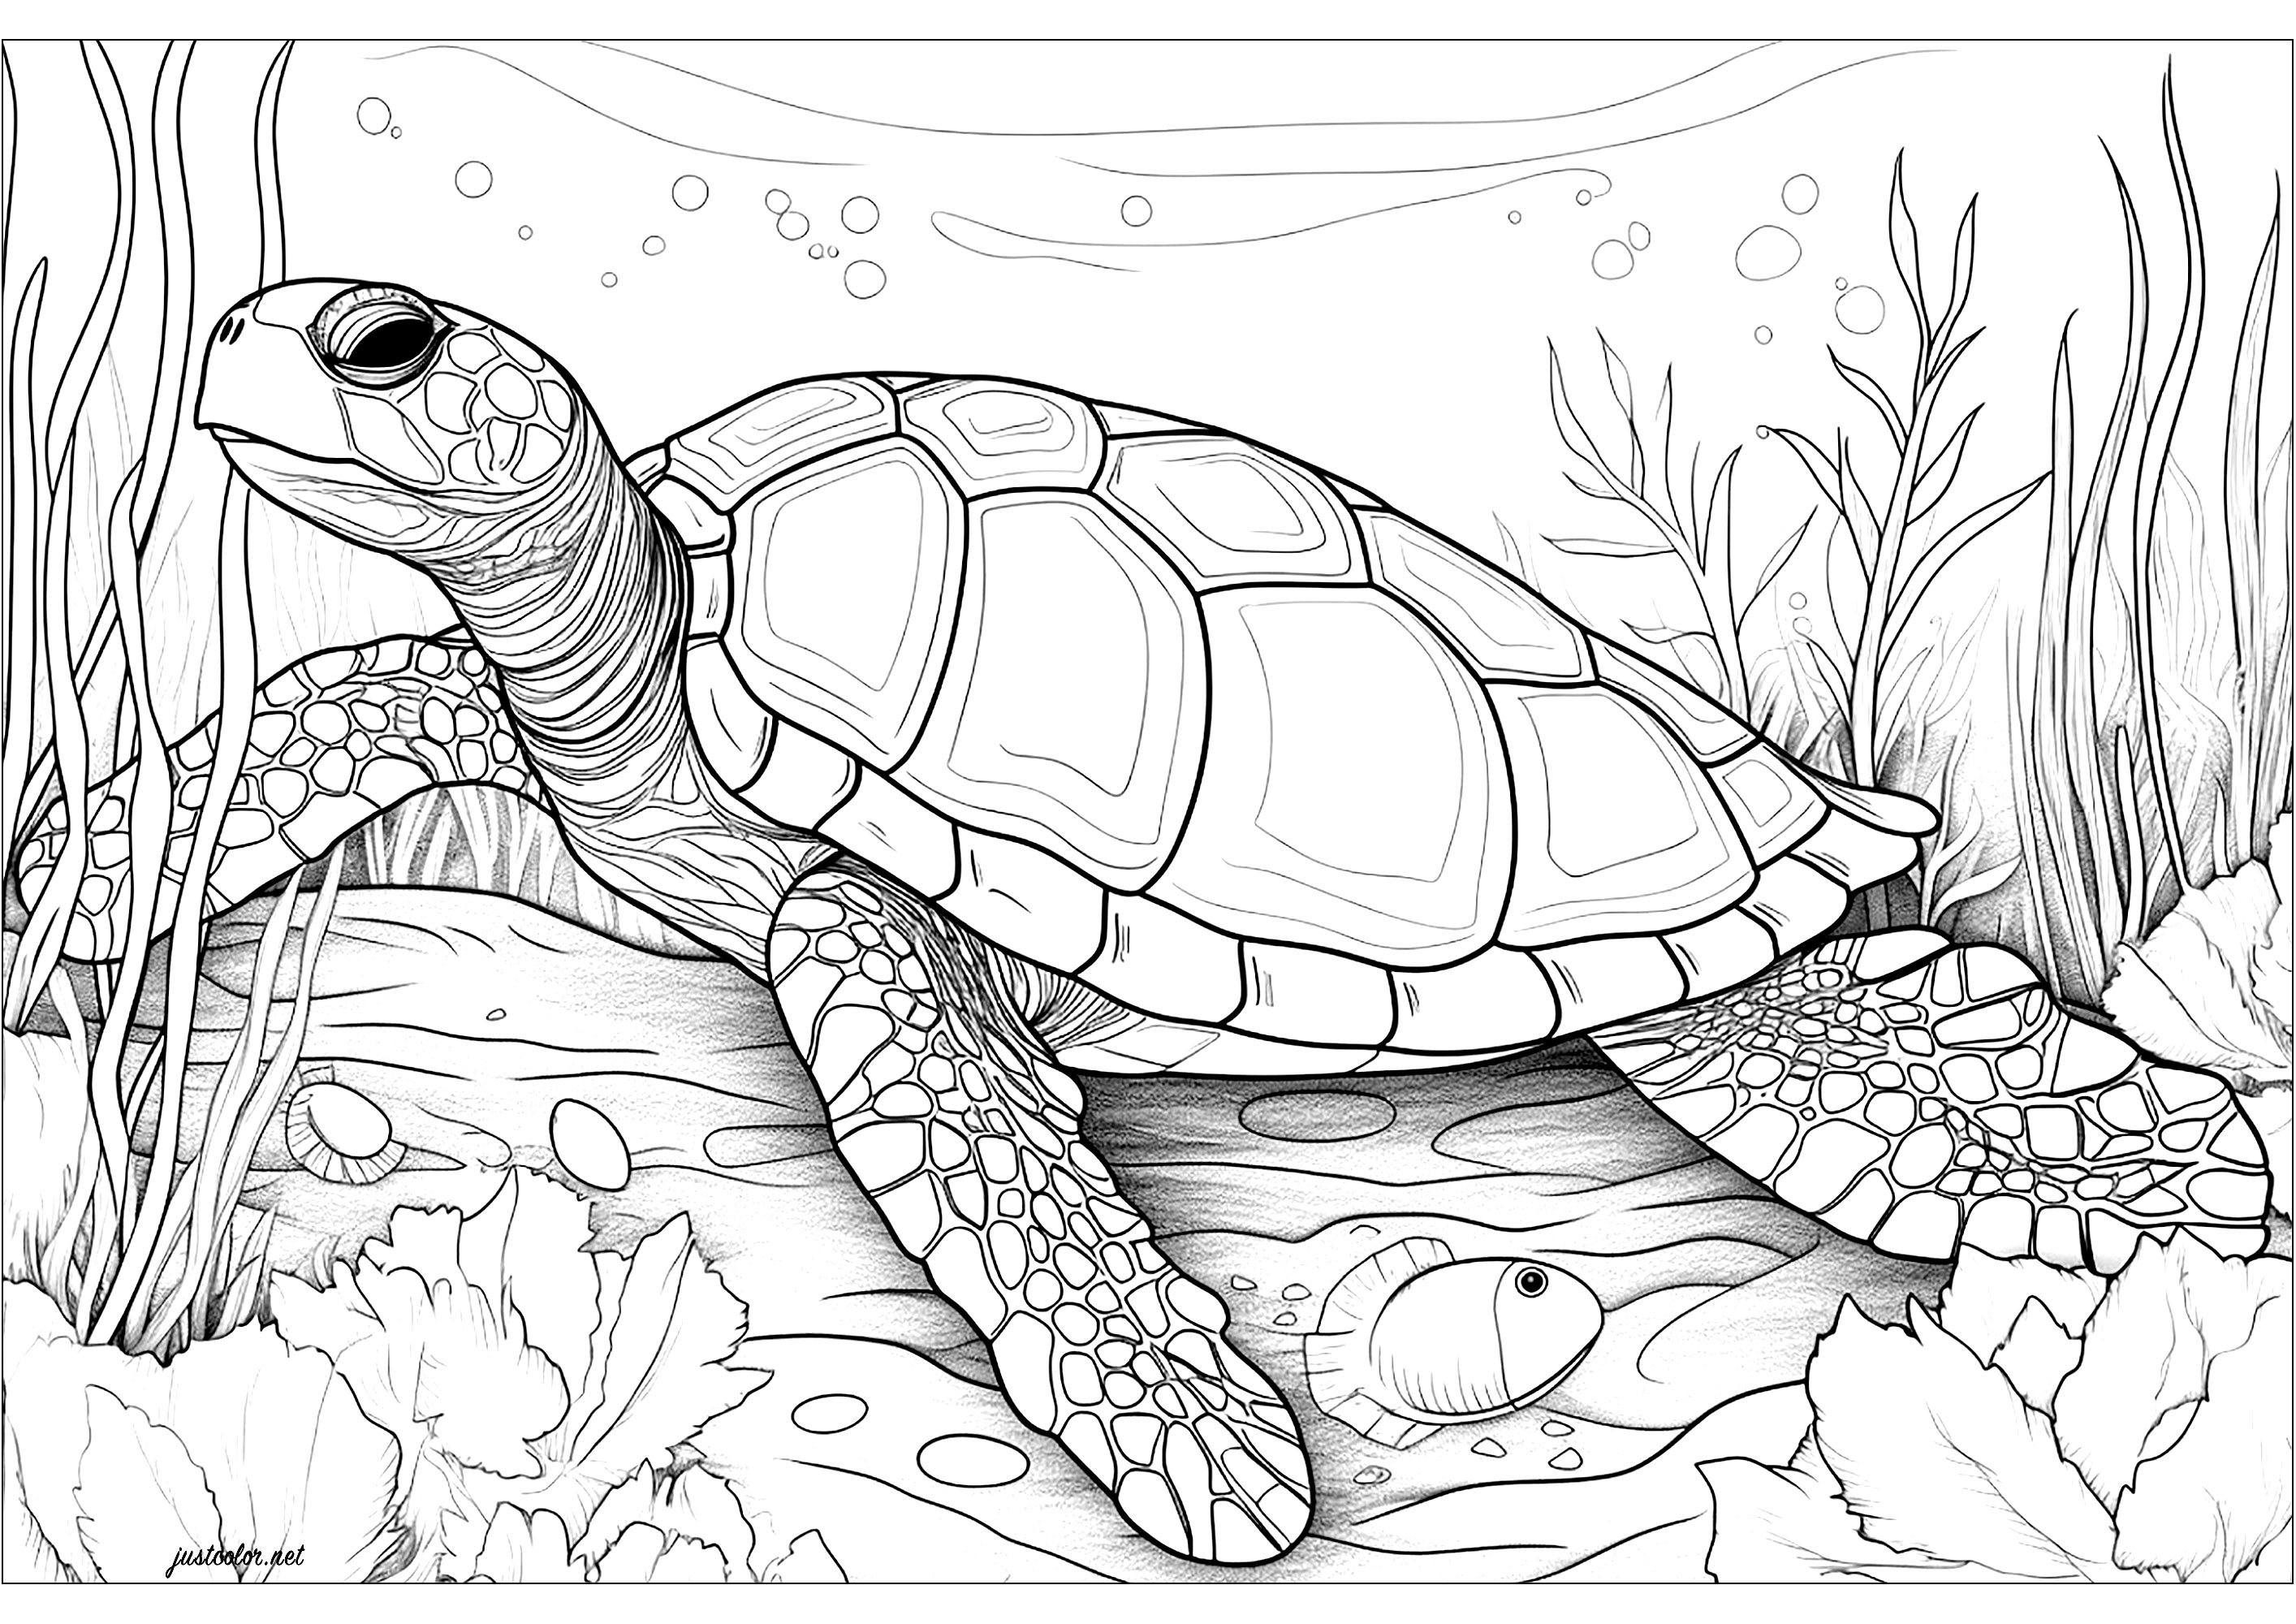 Große Meeresschildkröte. Eine sehr realistische Meeresschildkröte, es ist bis zu Ihnen, um die Details der Schale und Schuppen Farbe. Der Hintergrund ist mit Blasen und Wasservegetation gefüllt, so dass diese Malvorlage eine ruhige und heitere Atmosphäre.